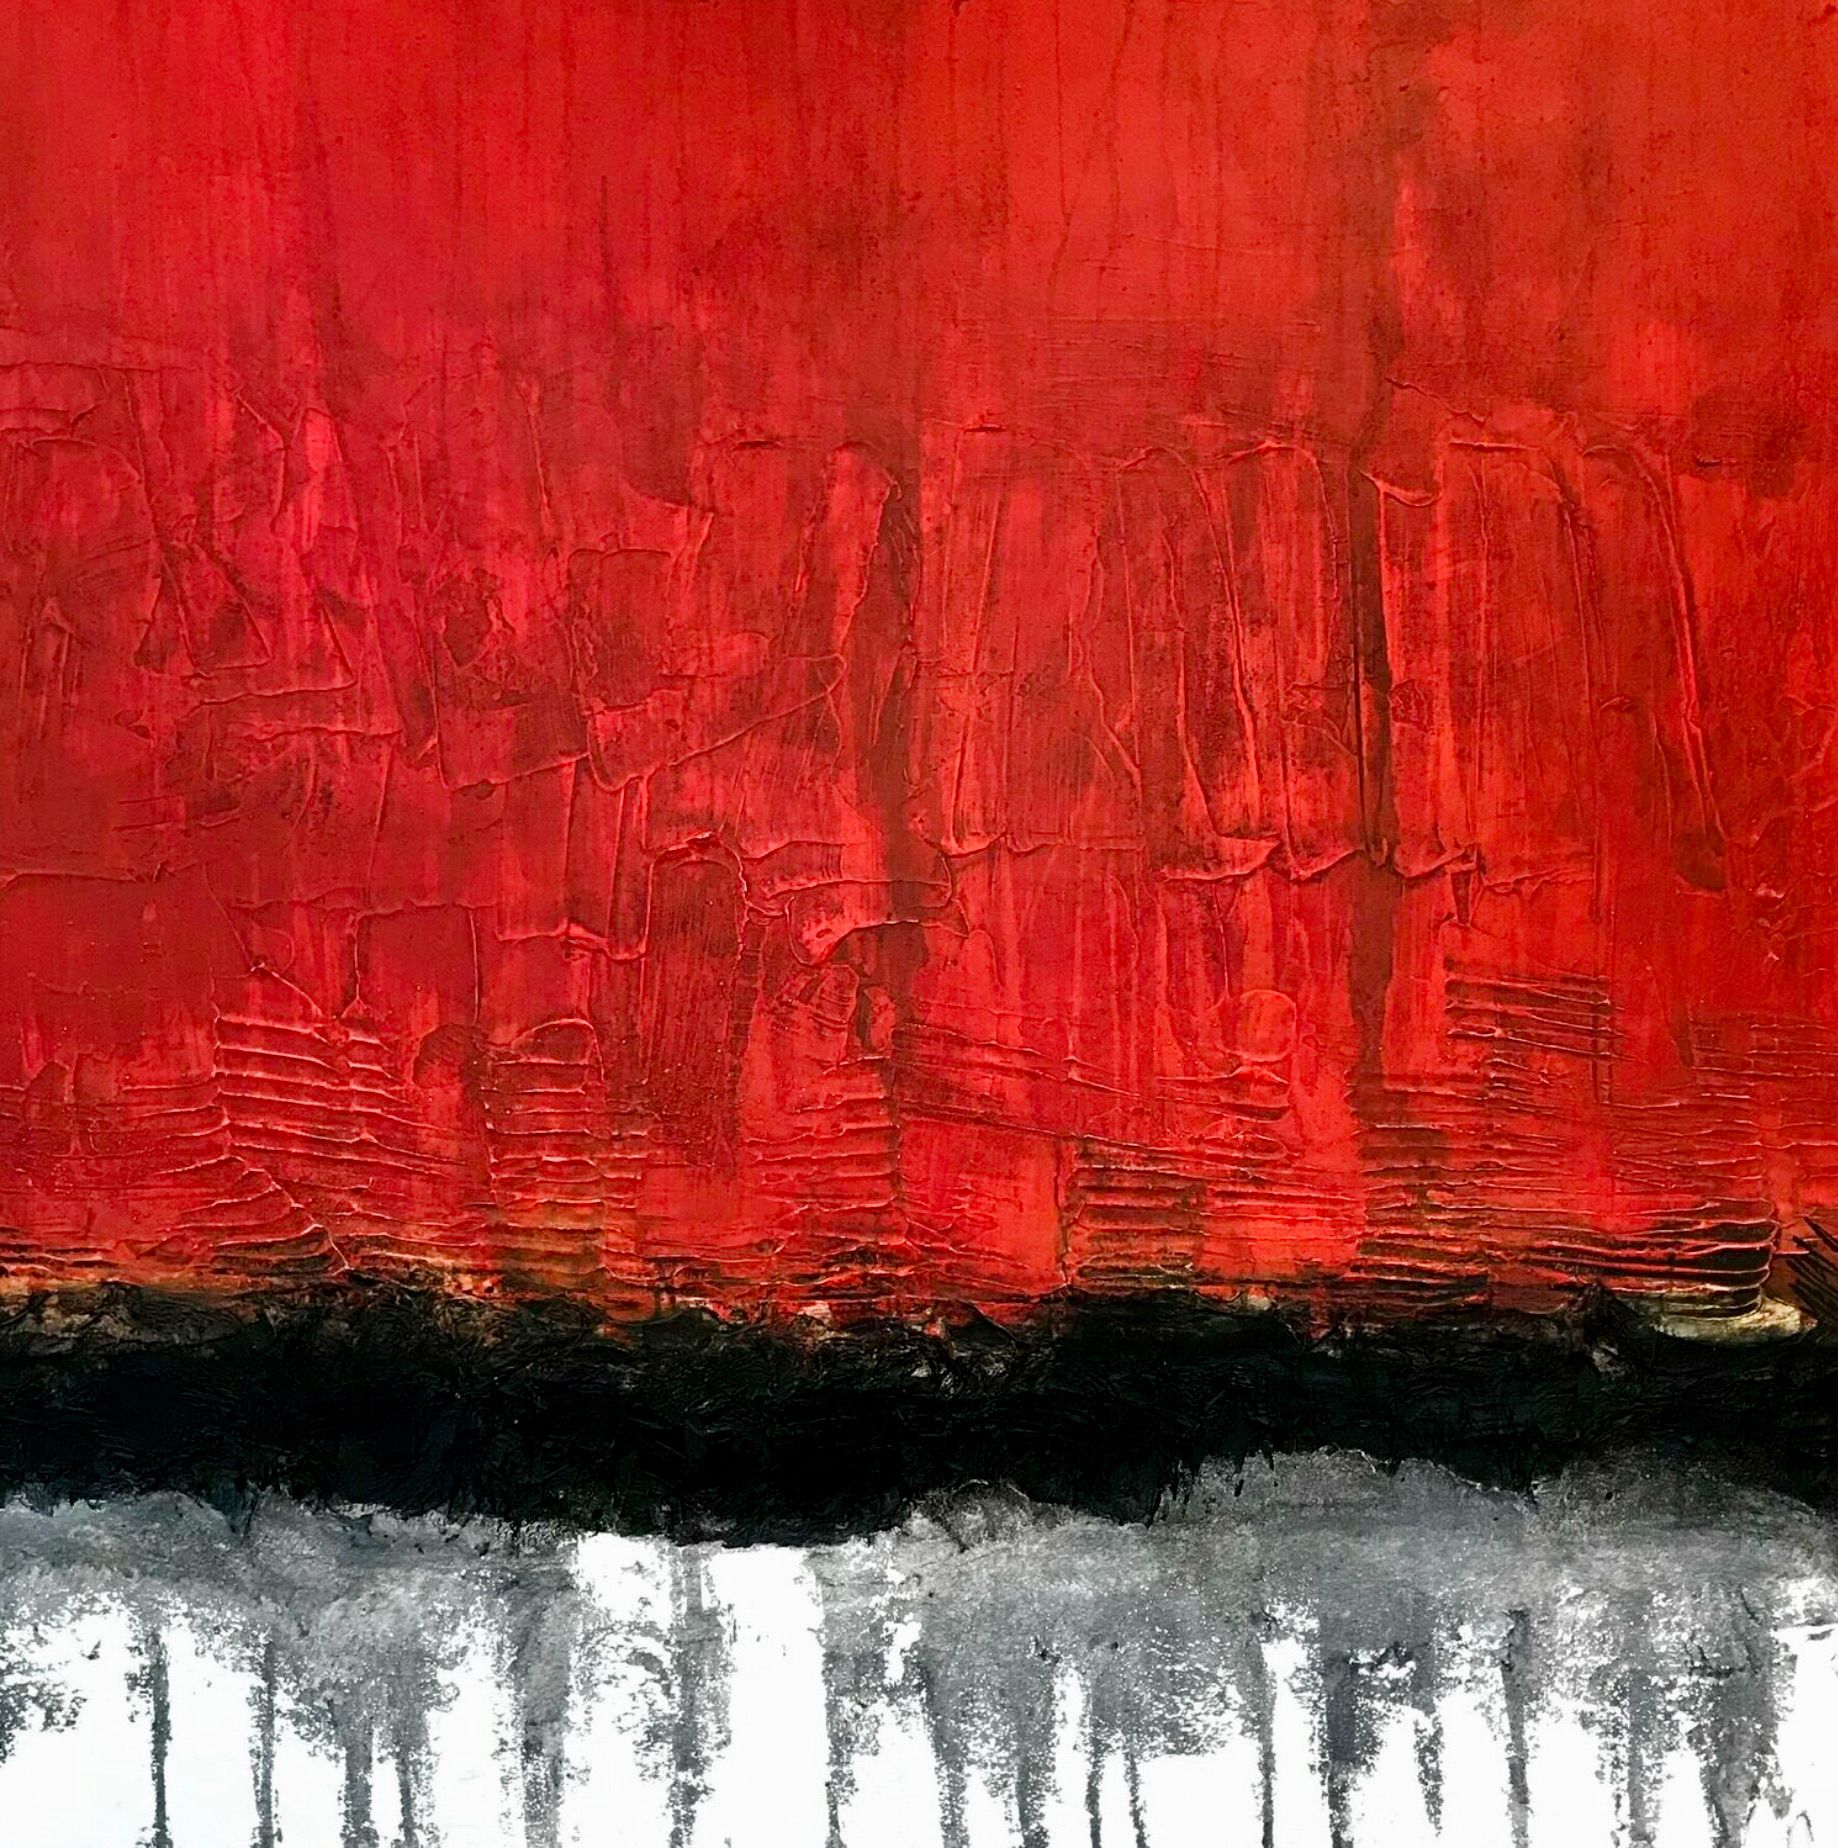 Pittura astratta di Oliver Messa "Horizon 006" in rosso.